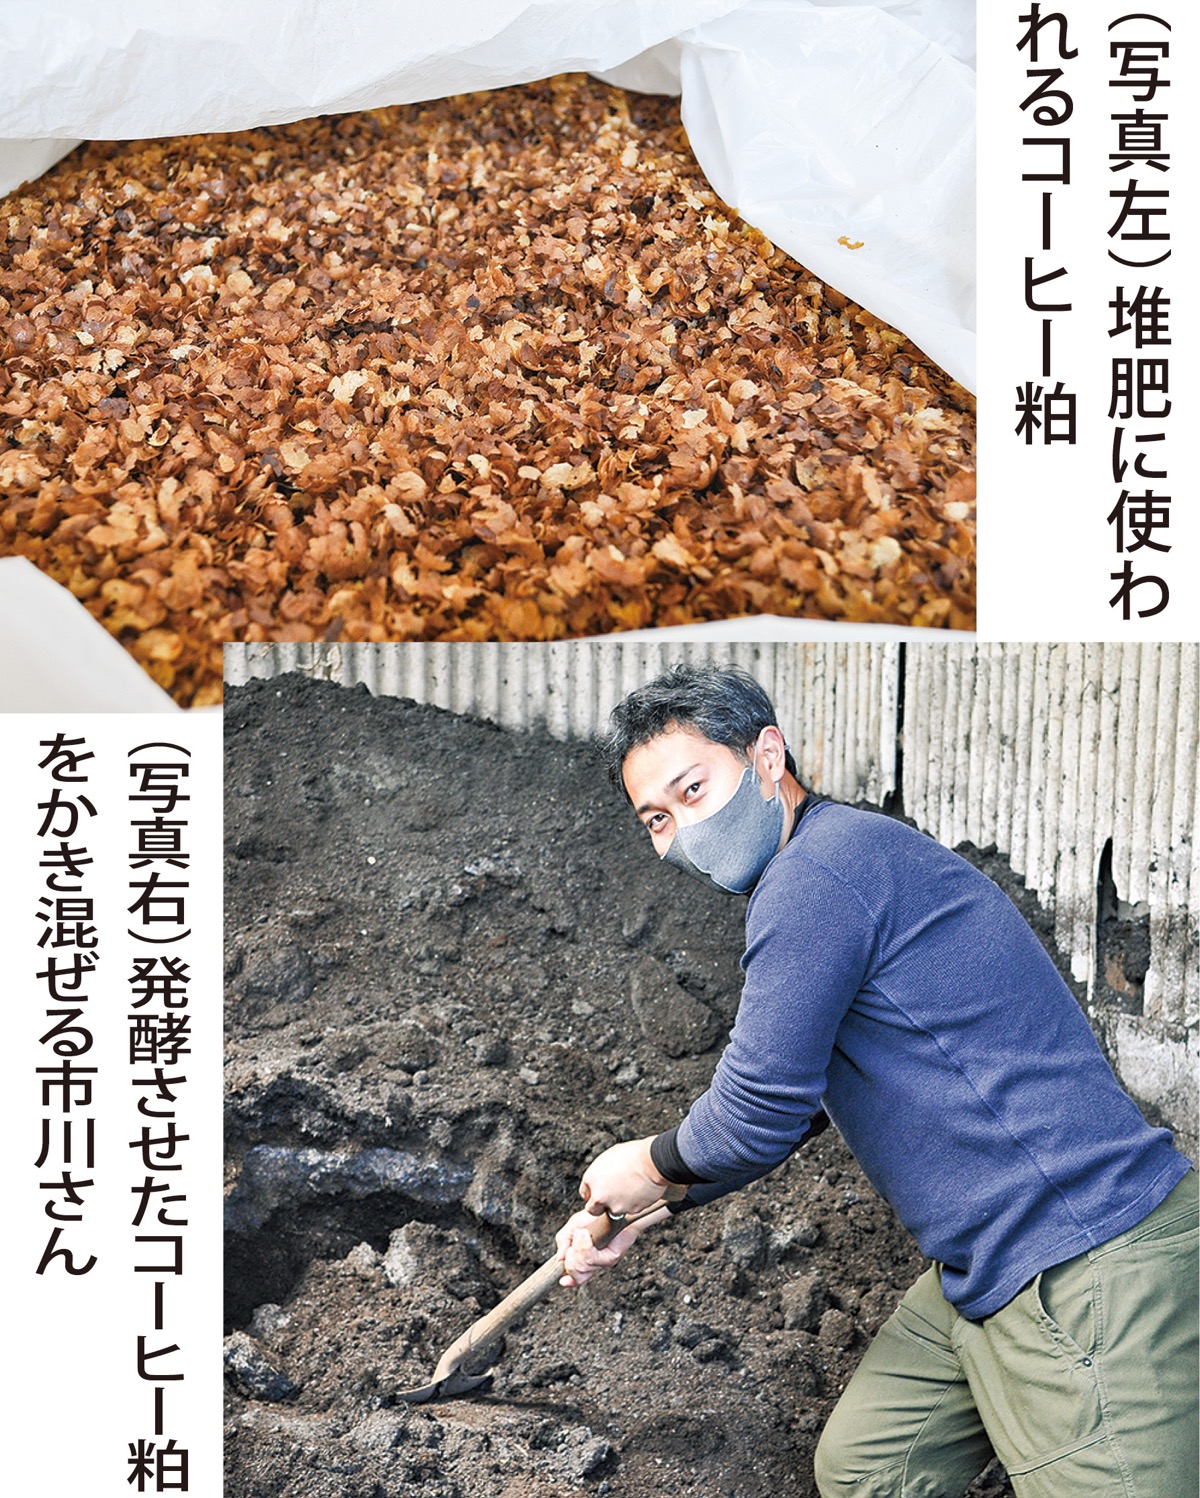 堆肥 コーヒー かす コーヒーかすをそのまま土に混ぜちゃダメ！自宅でできる良質な肥料のつくり方